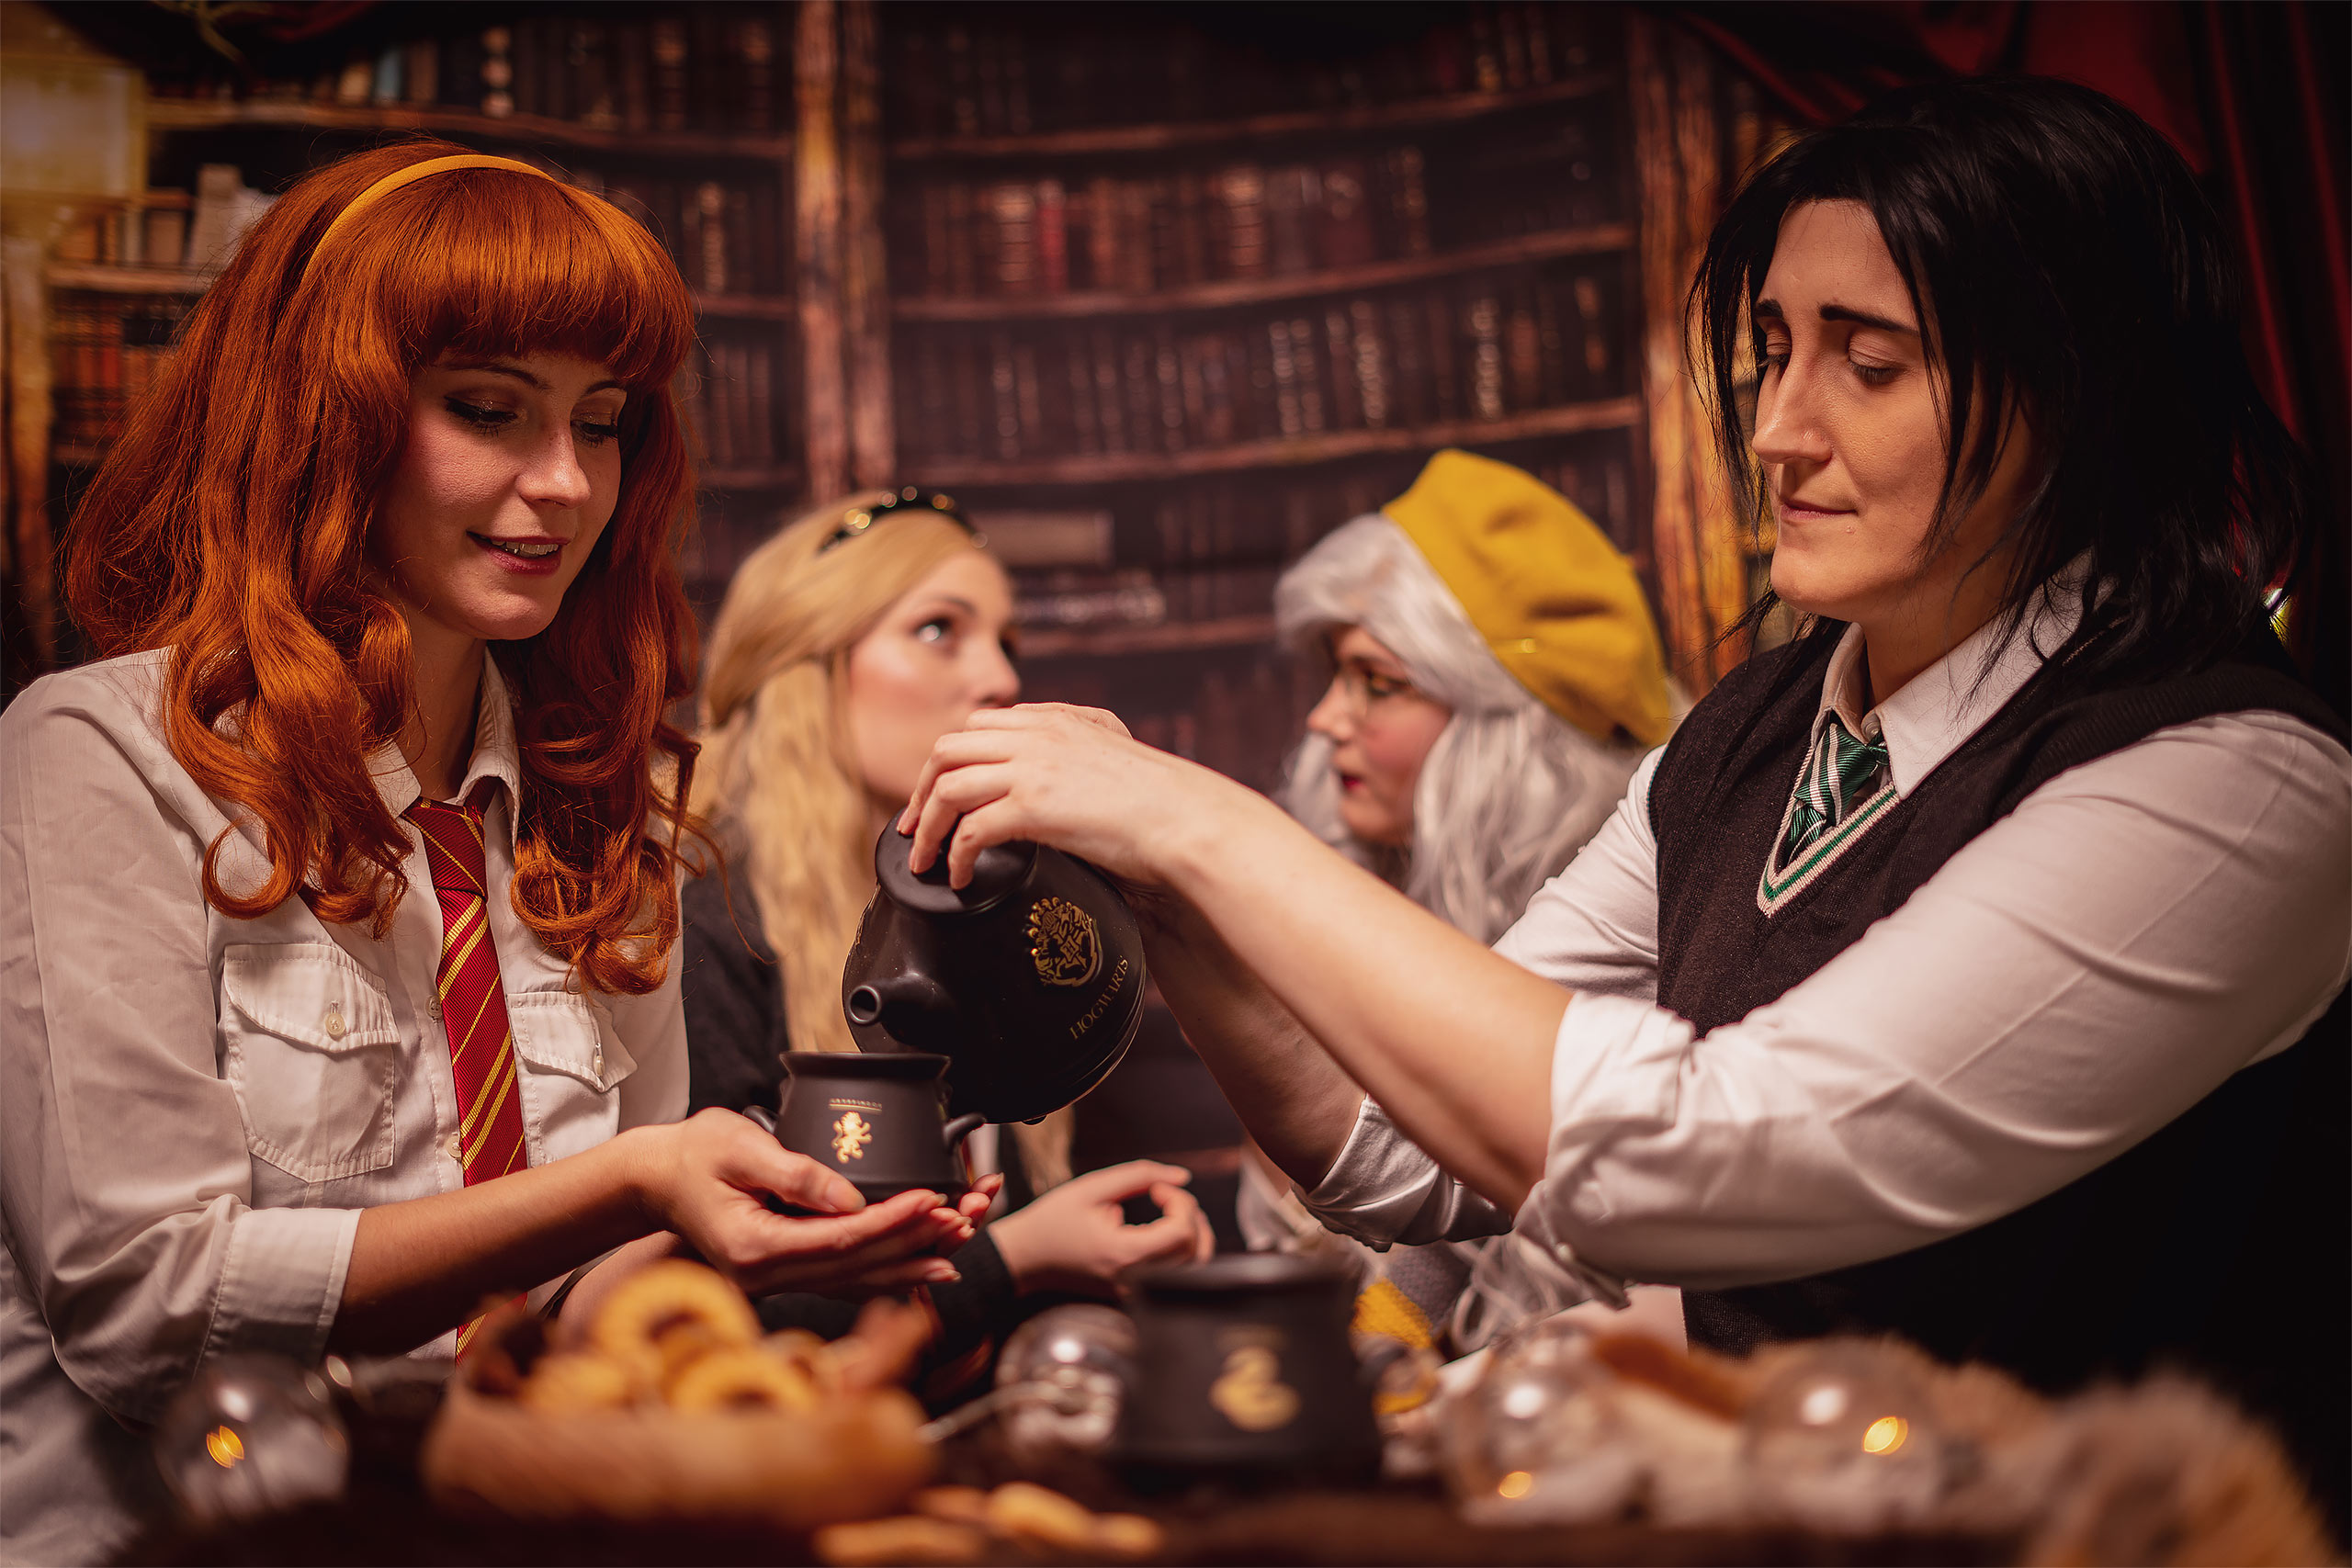 Harry Potter - Hogwarts Crest Cauldron Tea Set